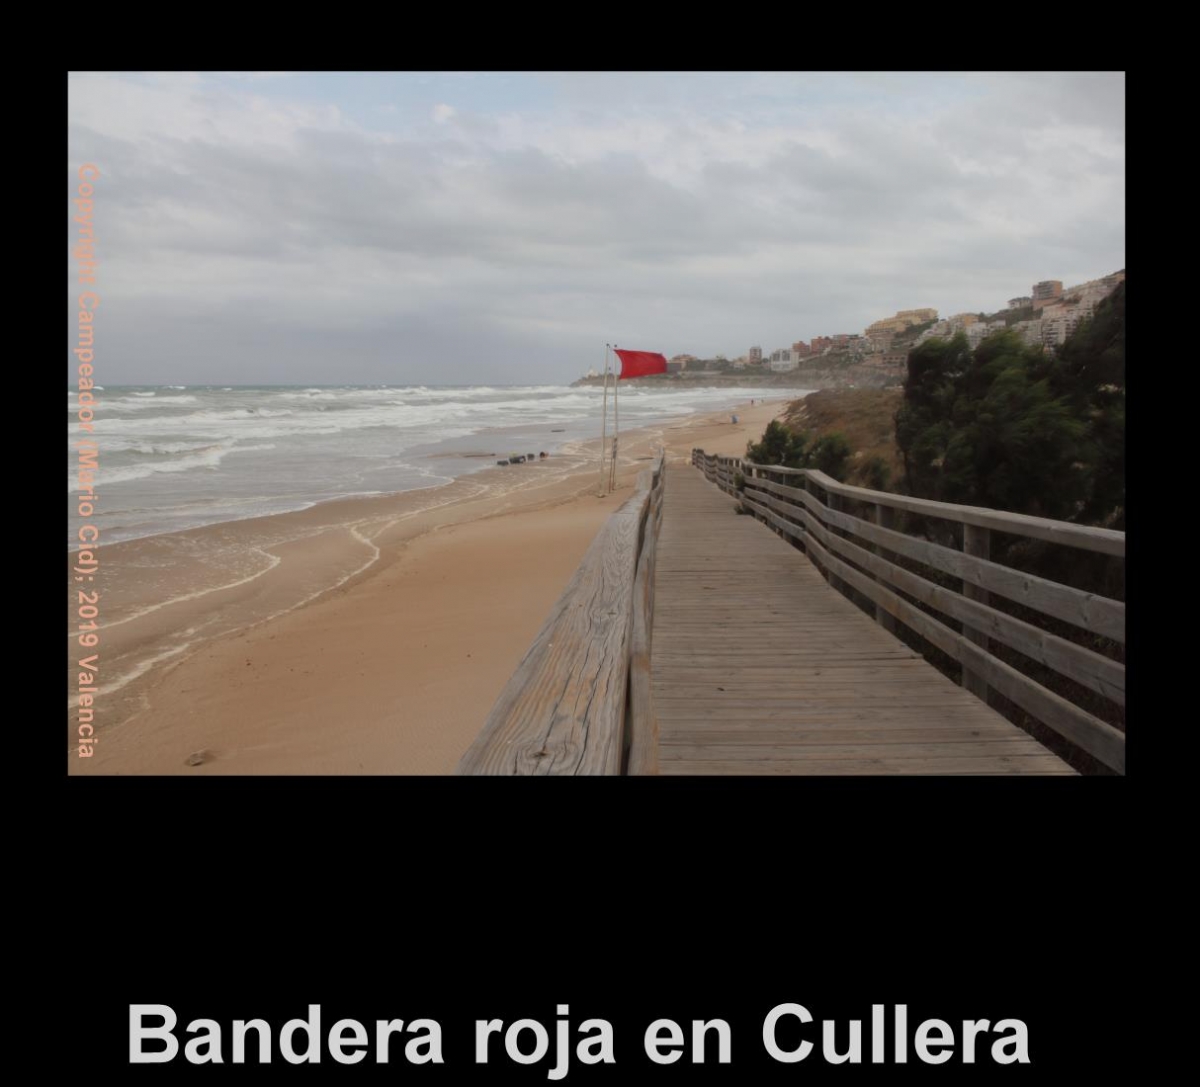 Bandera roja en Cullera - Red flag in Cullera